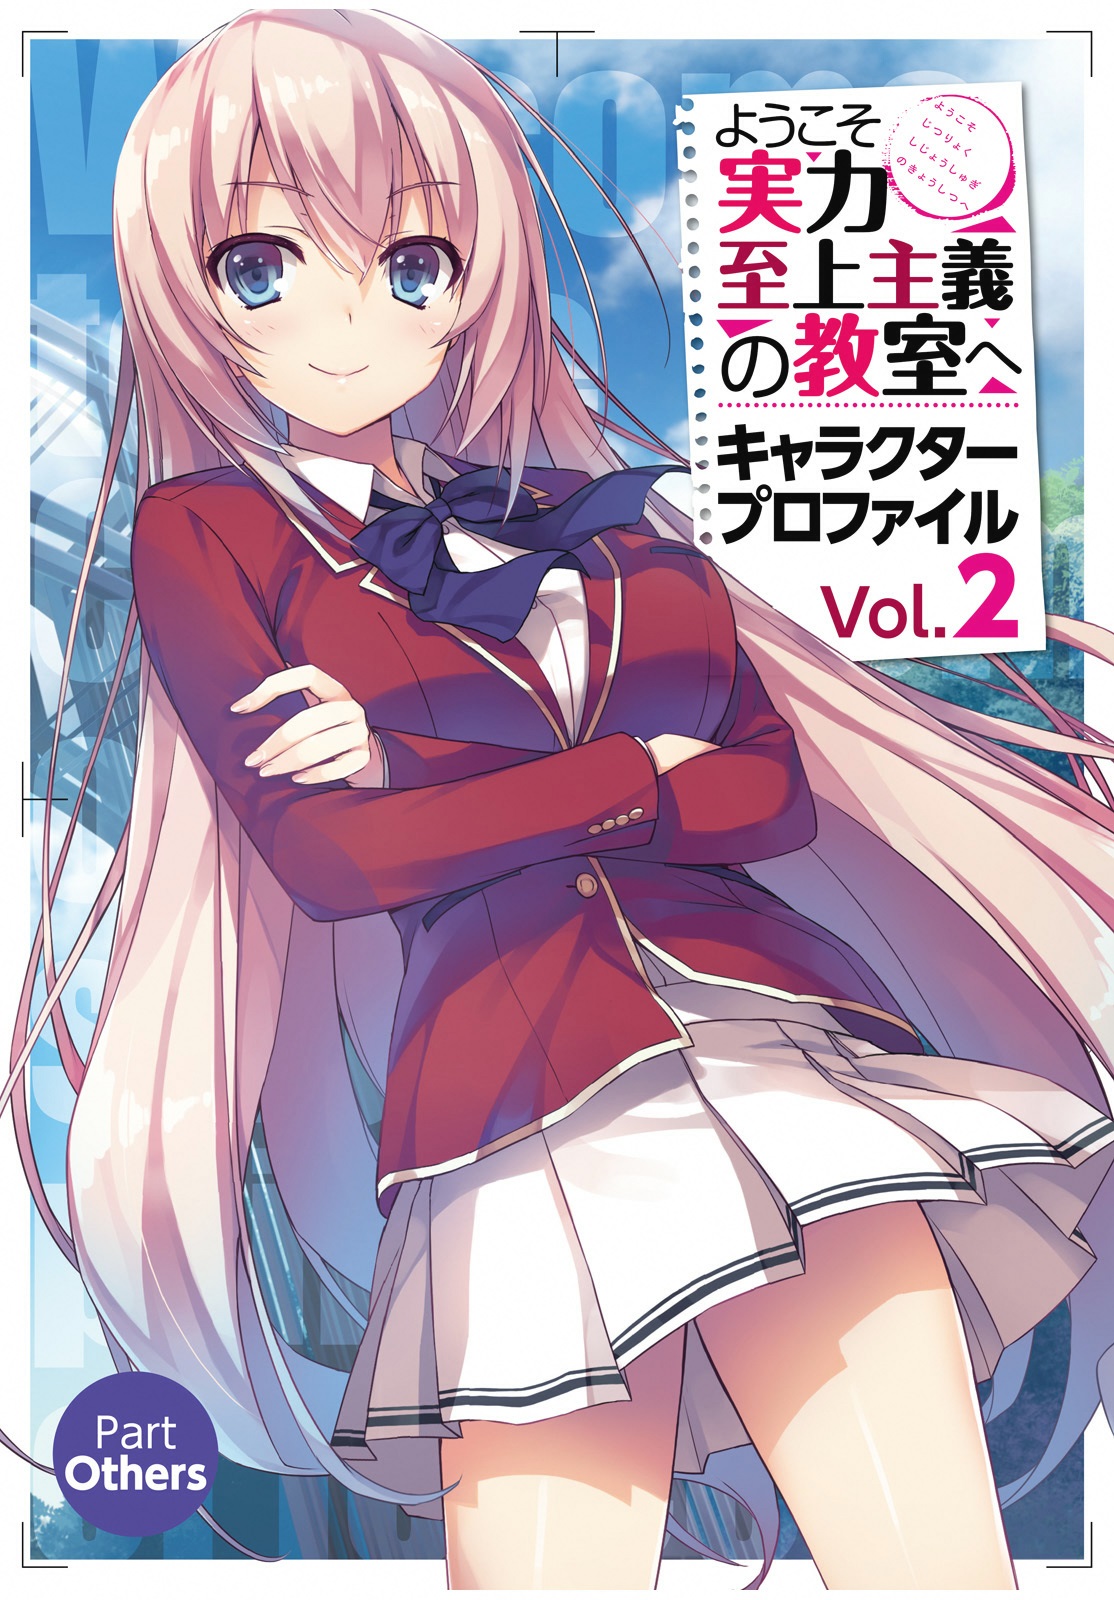 BD/DVD Season 2 Volume 3, You-Zitsu Wiki